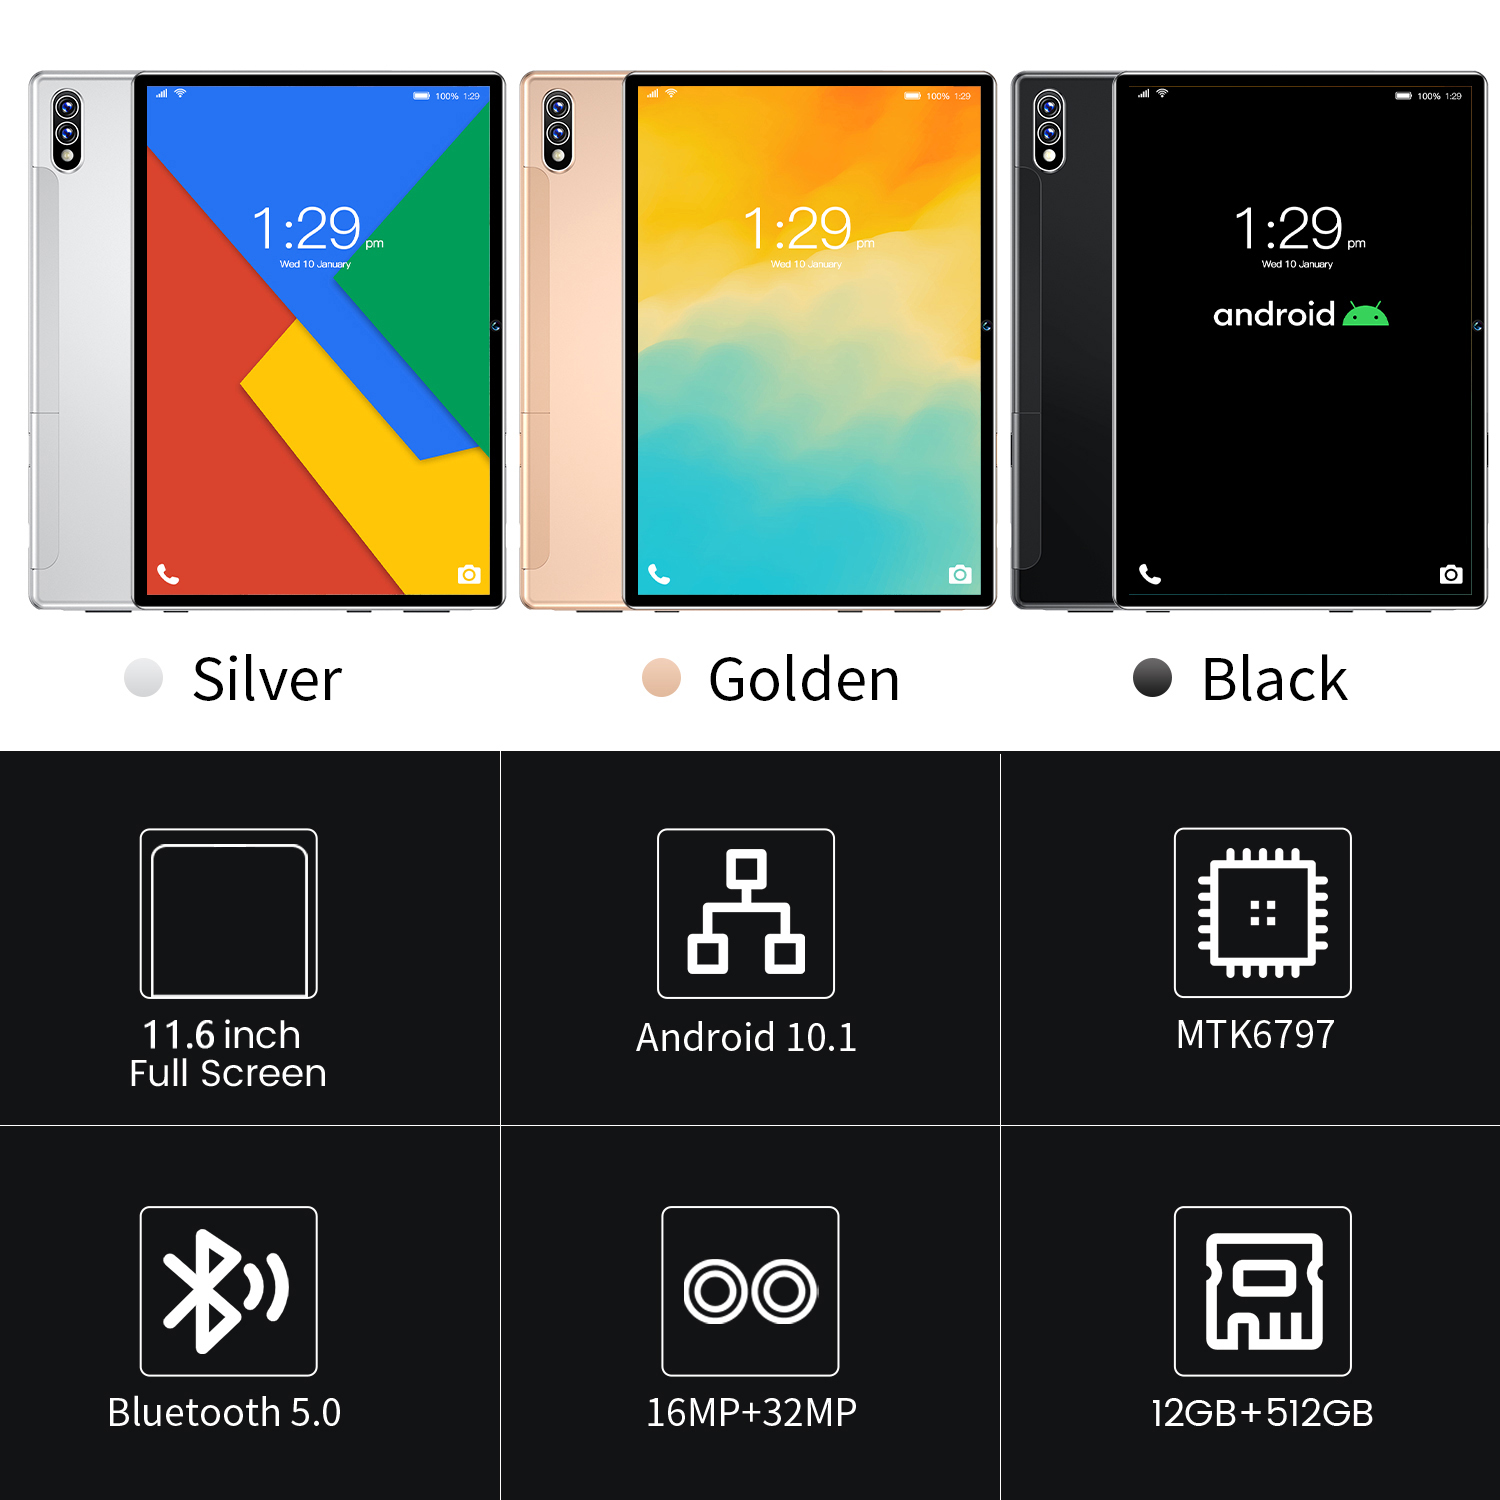 เกี่ยวกับสินค้า 🥇LazMaII TOP1 แท็บเล็ตถูกๆ Sg Galaxy S7+ Tablet PC+ ใหม่ แท็บเล็ต 4g/5G แท็บเล็ตโทรได้ Screen Dual Sim Andorid Full HD จัดส่งฟรี รองรับภาษาไทย หน่วยประมวลผล แท็บเล็ตสำหรับเล่นเกมราคาถูก RAM12G ROM512G ไอเเพ็ด แท็บเล็ต แท็บเล็ตราคาถูกๆ